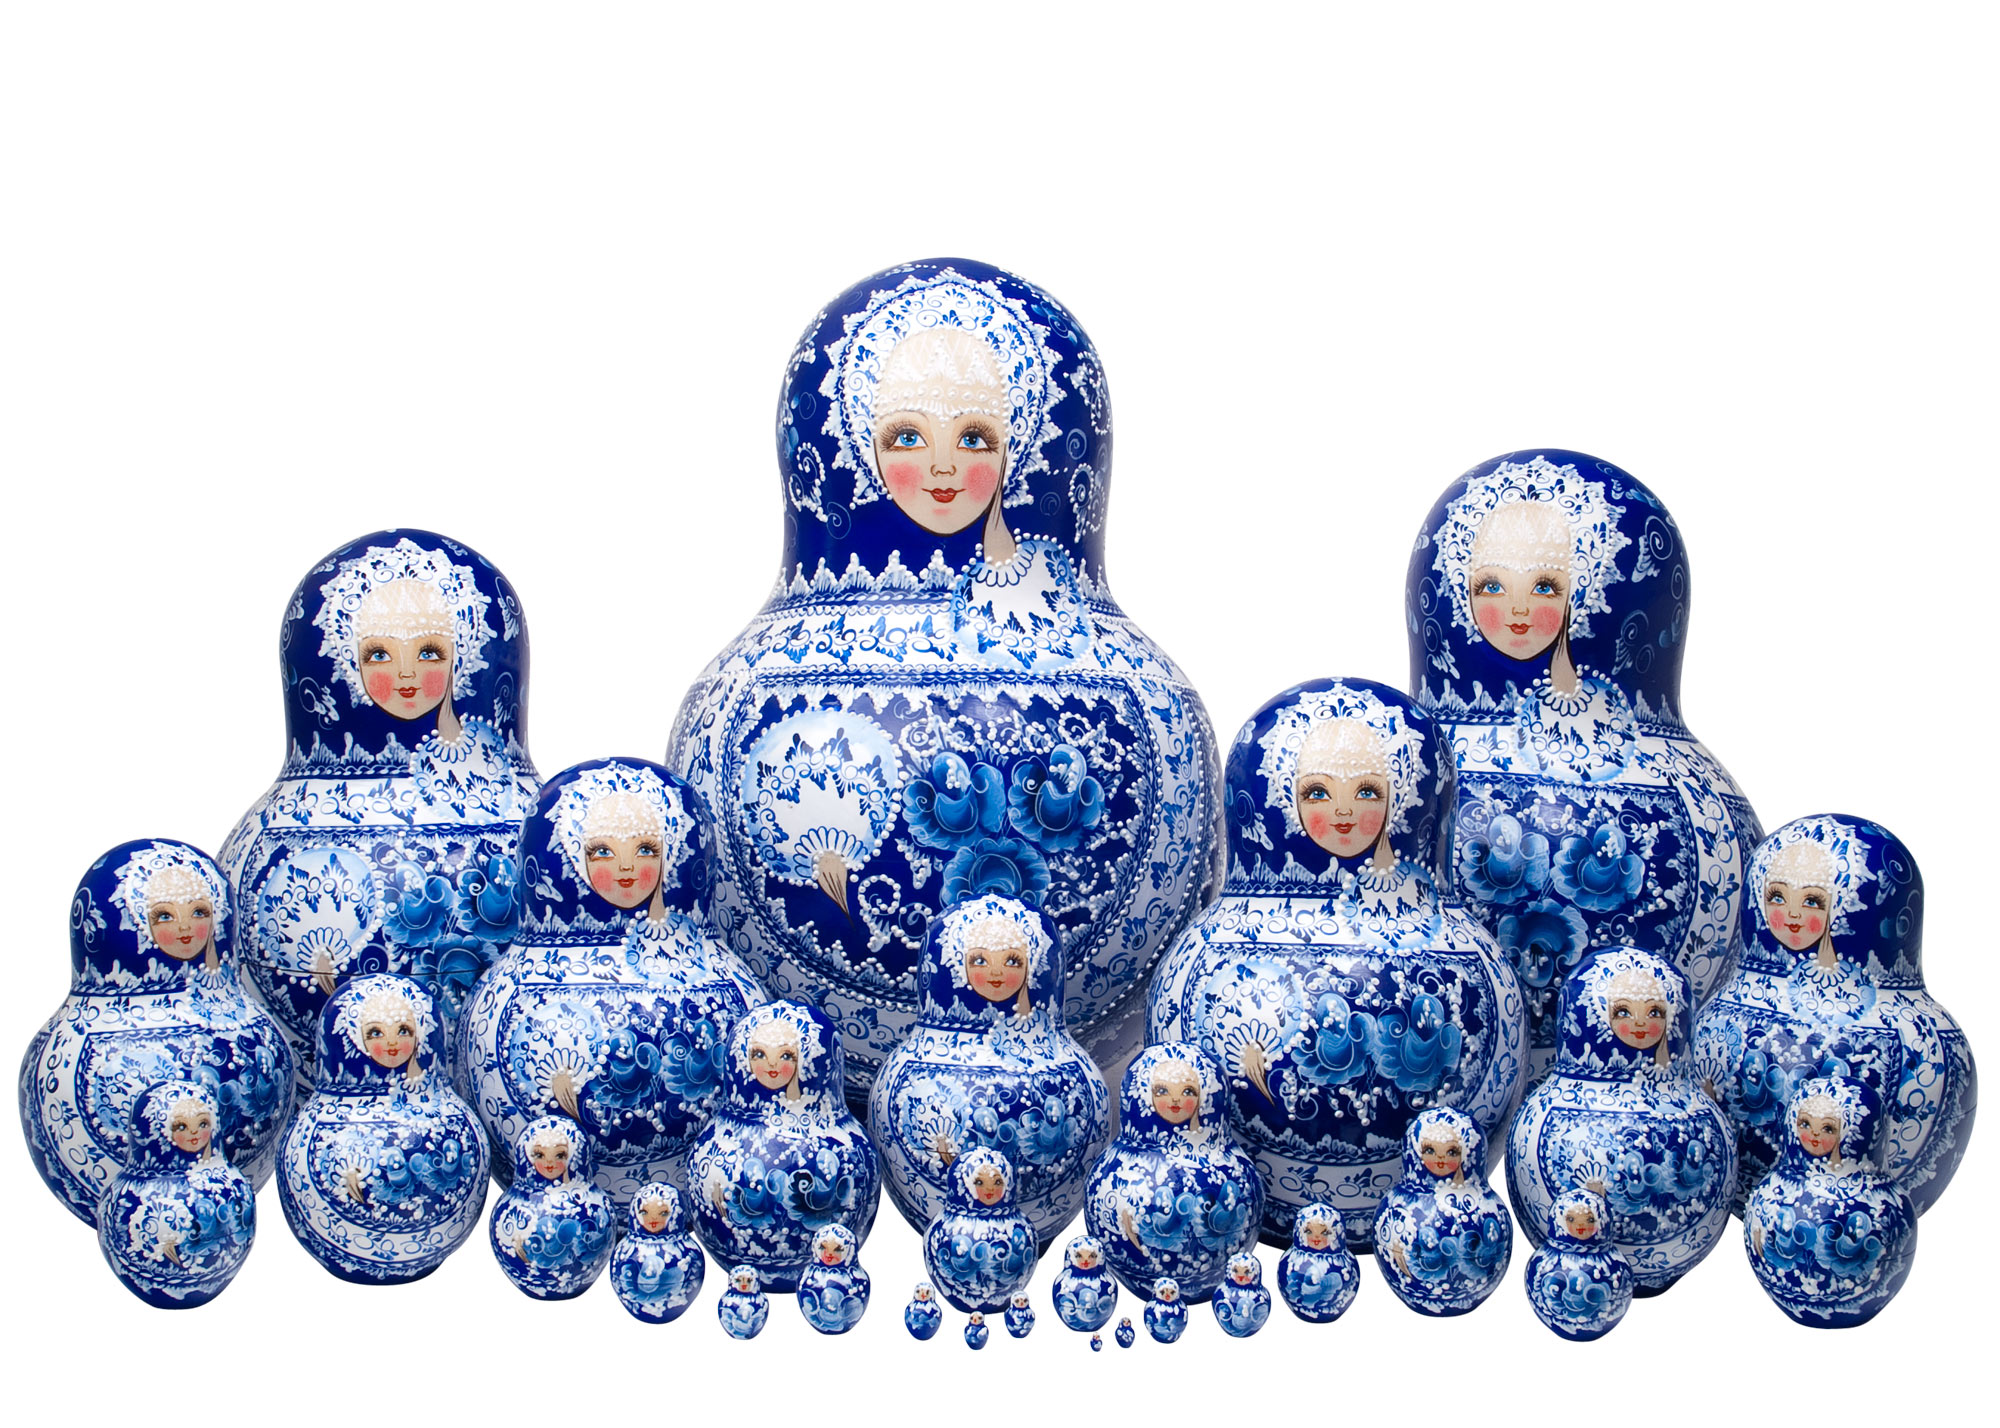 Buy Mega Gzhel Nesting Doll 30pc./13.5" at GoldenCockerel.com